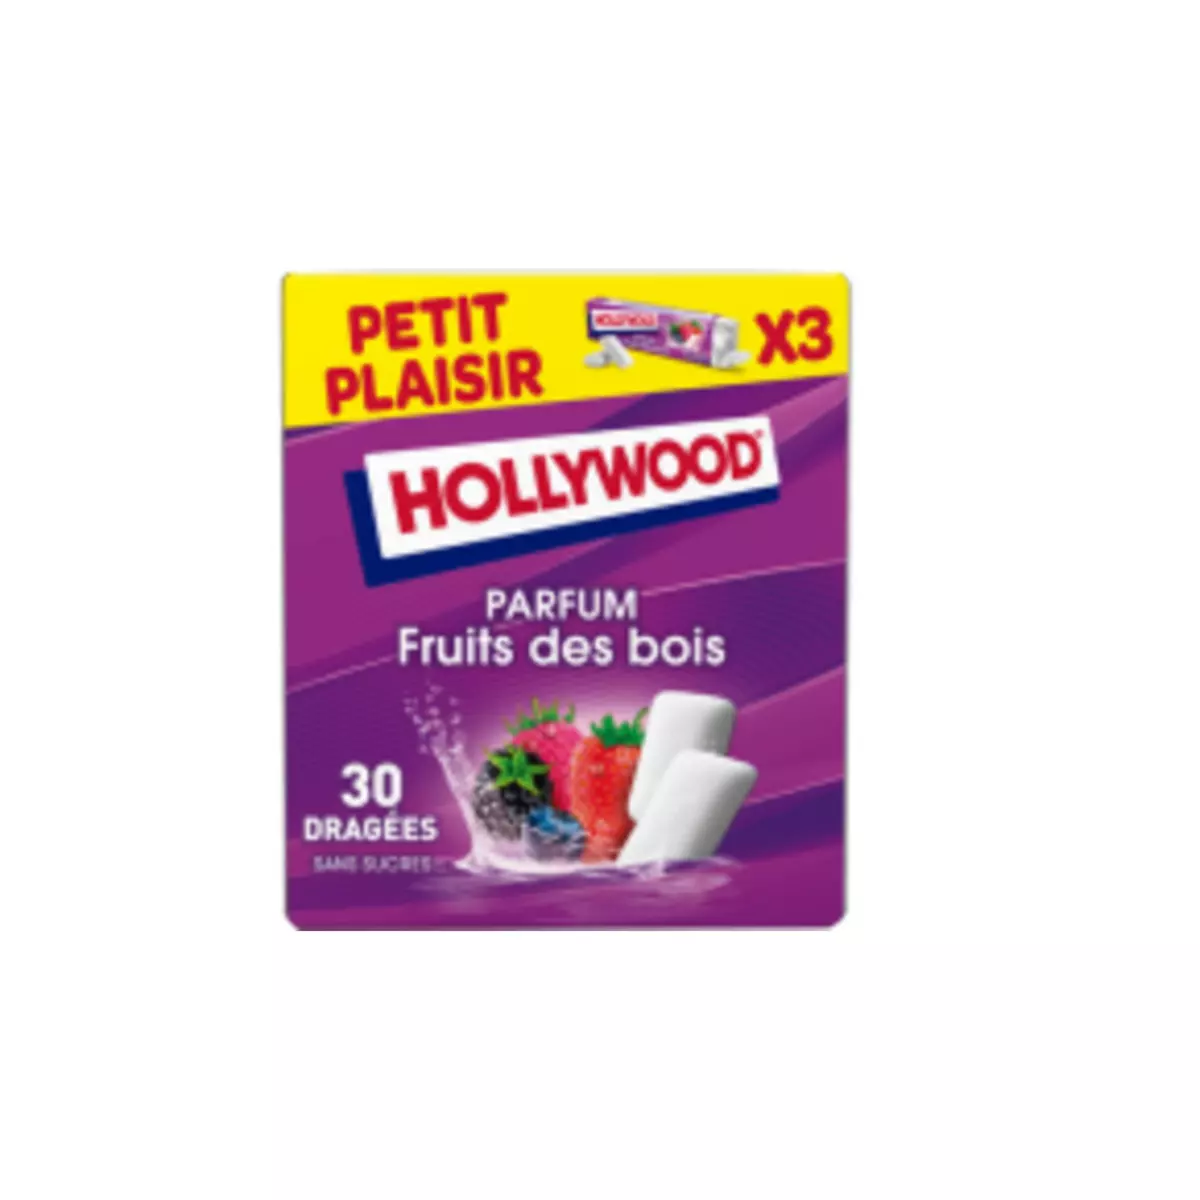 HOLLYWOOD Chewing-gum parfum fruits des bois 3x10 dragées 42g